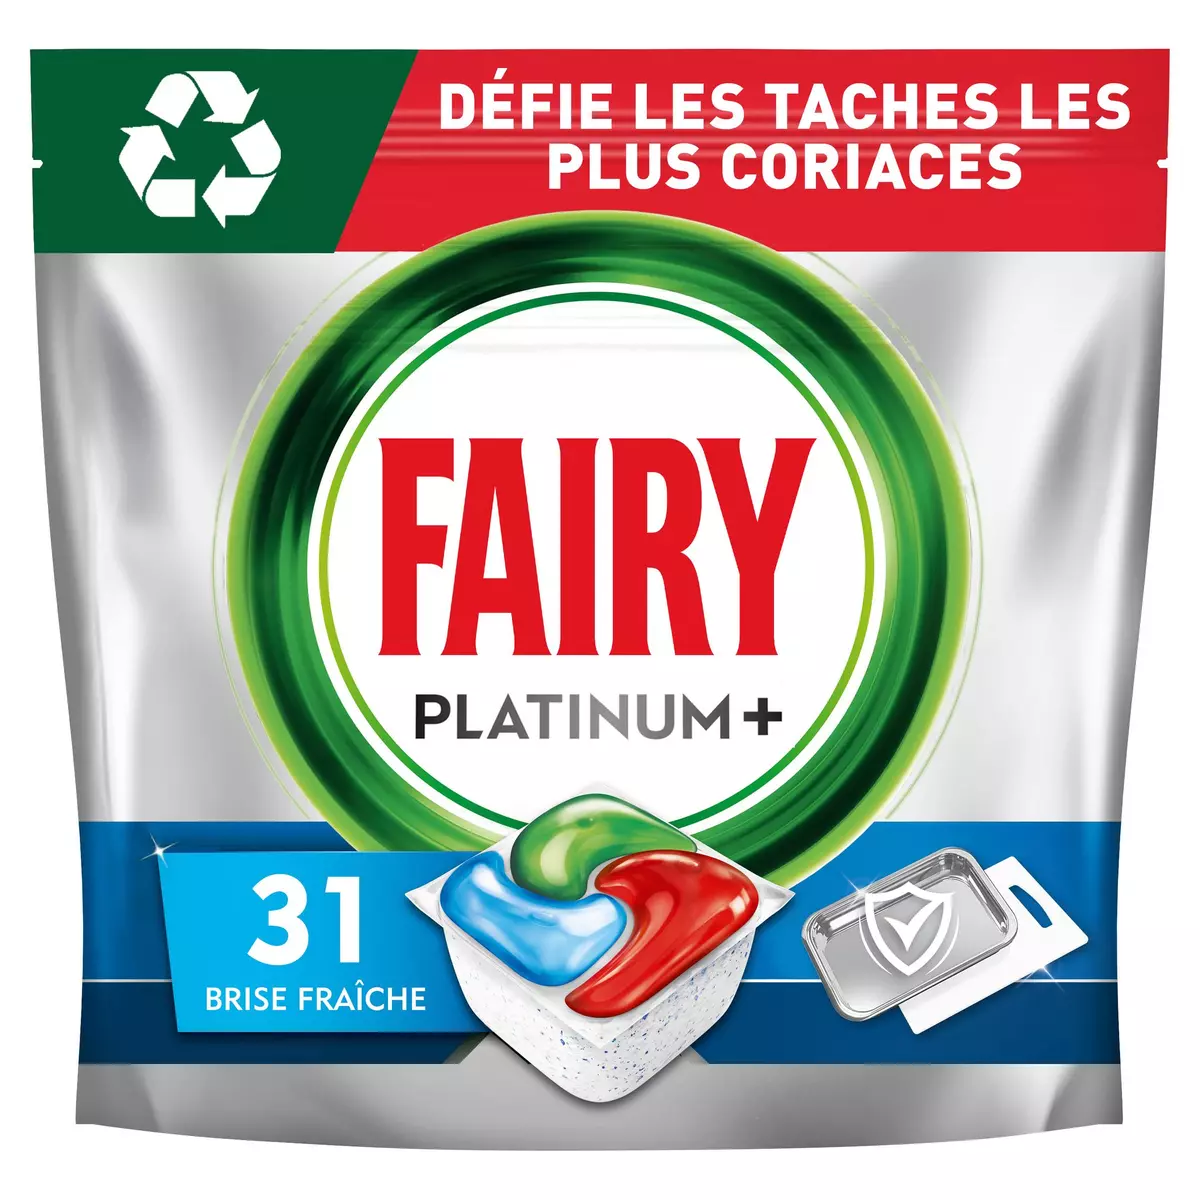 FAIRY Platinum+ tablettes lave-vaisselle tout en 1 propreté intense 31 tablettes